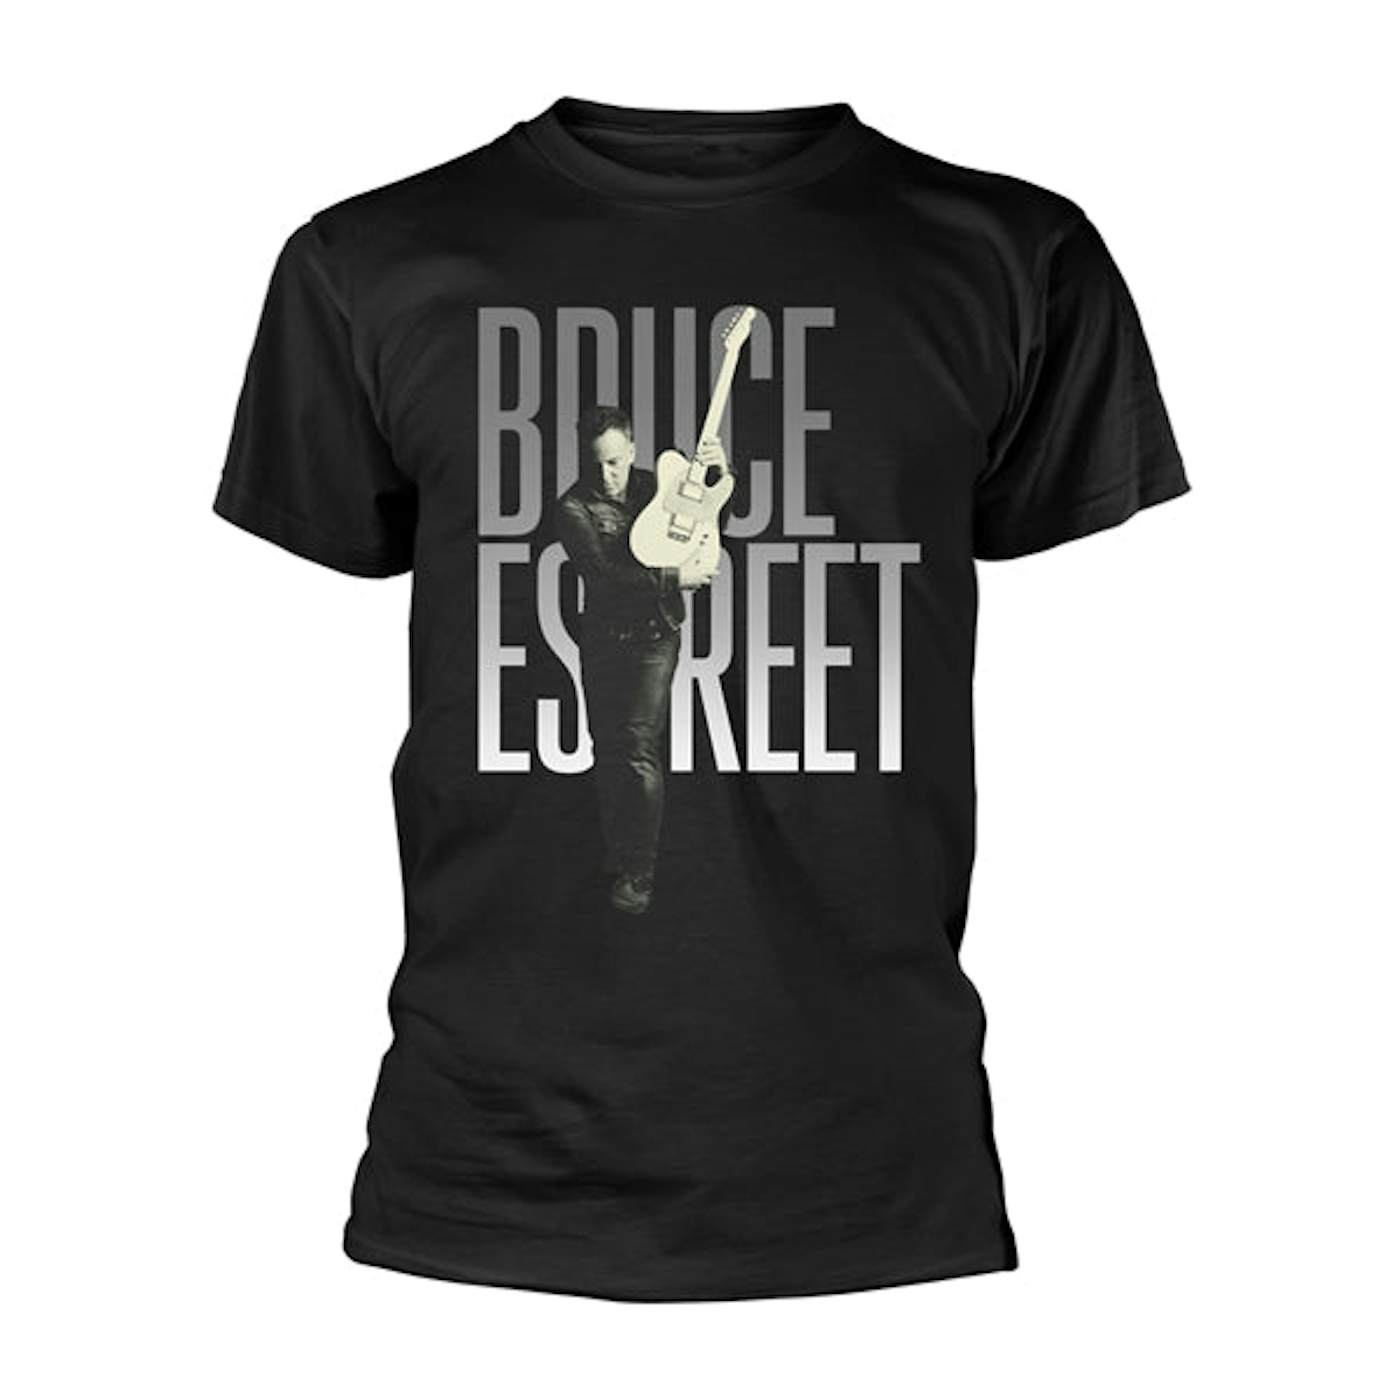 Bruce Springsteen T Shirt - E Street